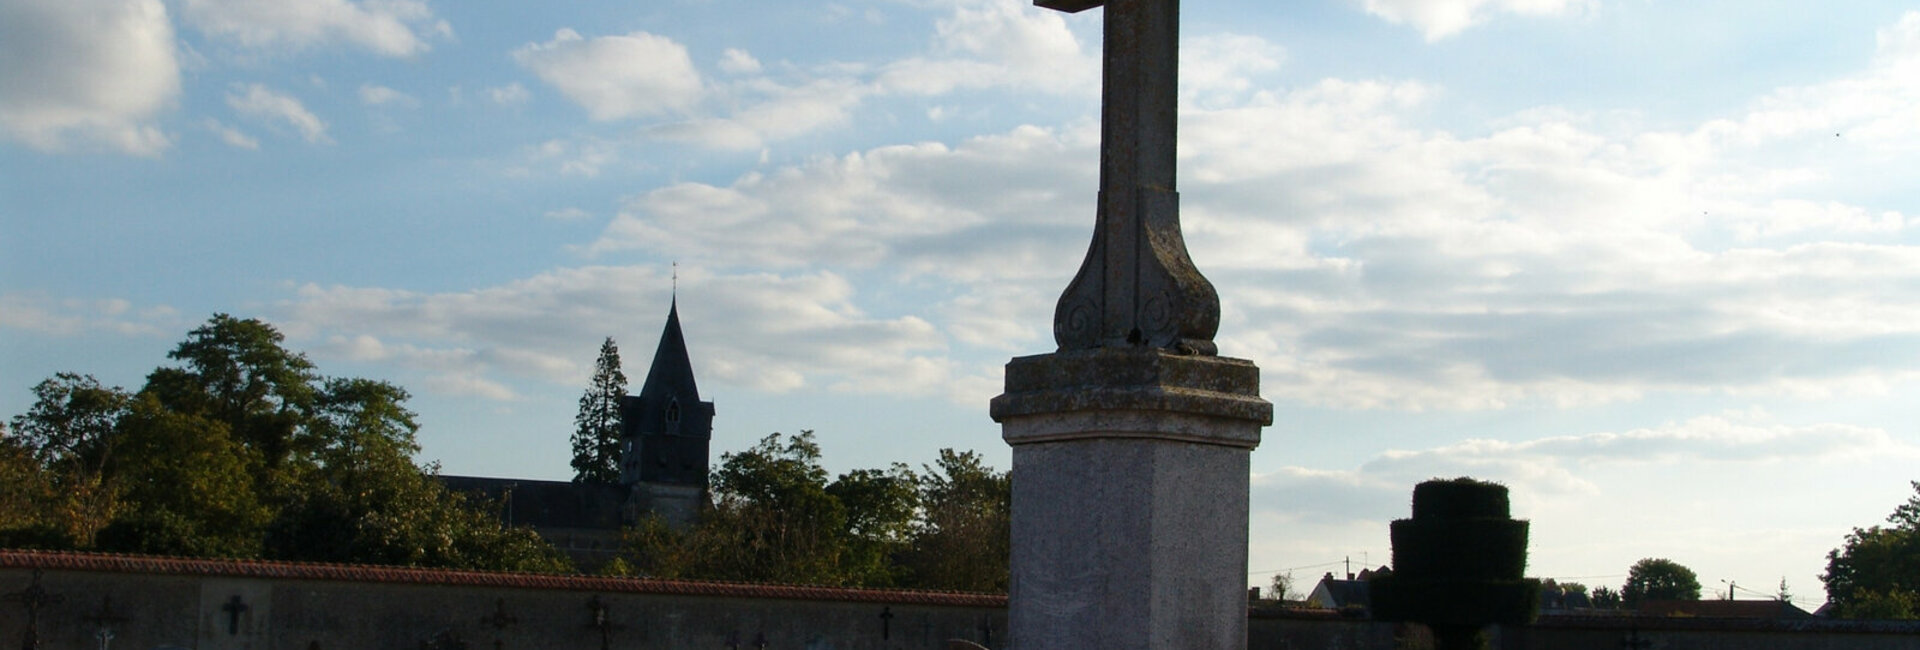 Cimetière et colombarium de Aschères-le-Marché (45) Loiret